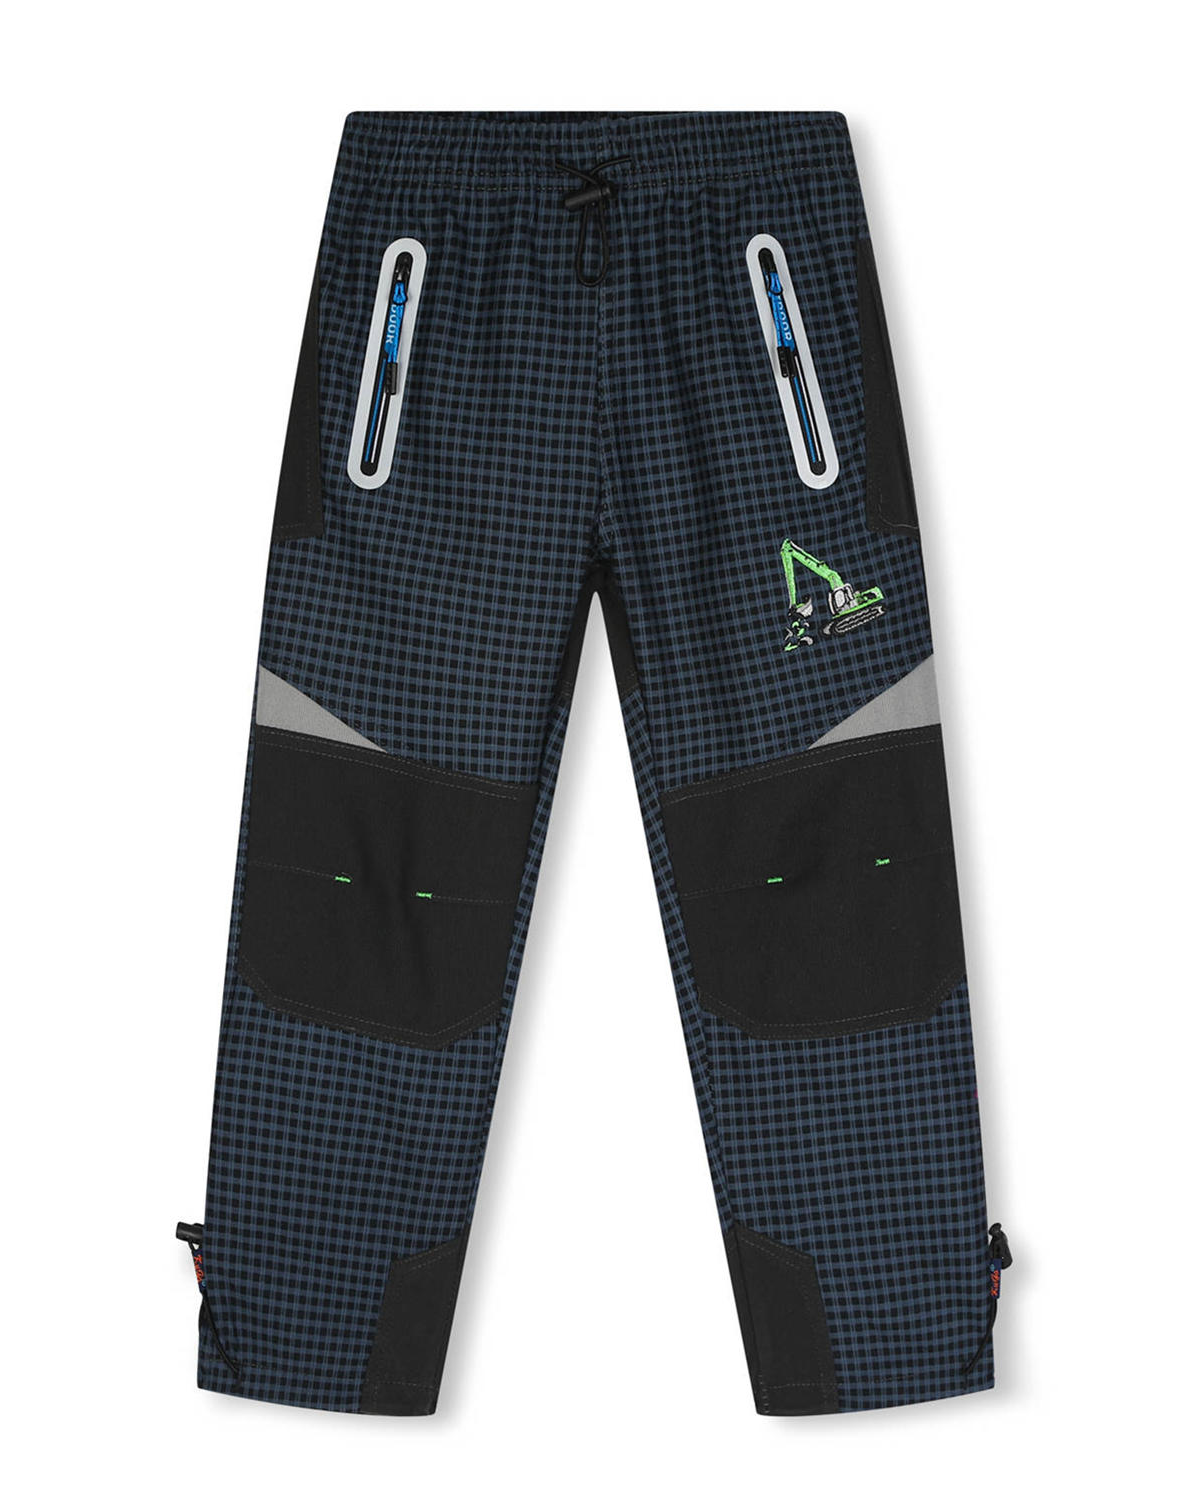 Chlapecké outdoorové kalhoty - KUGO G9650, šedomodrá / modré zipy Barva: Šedá, Velikost: 98